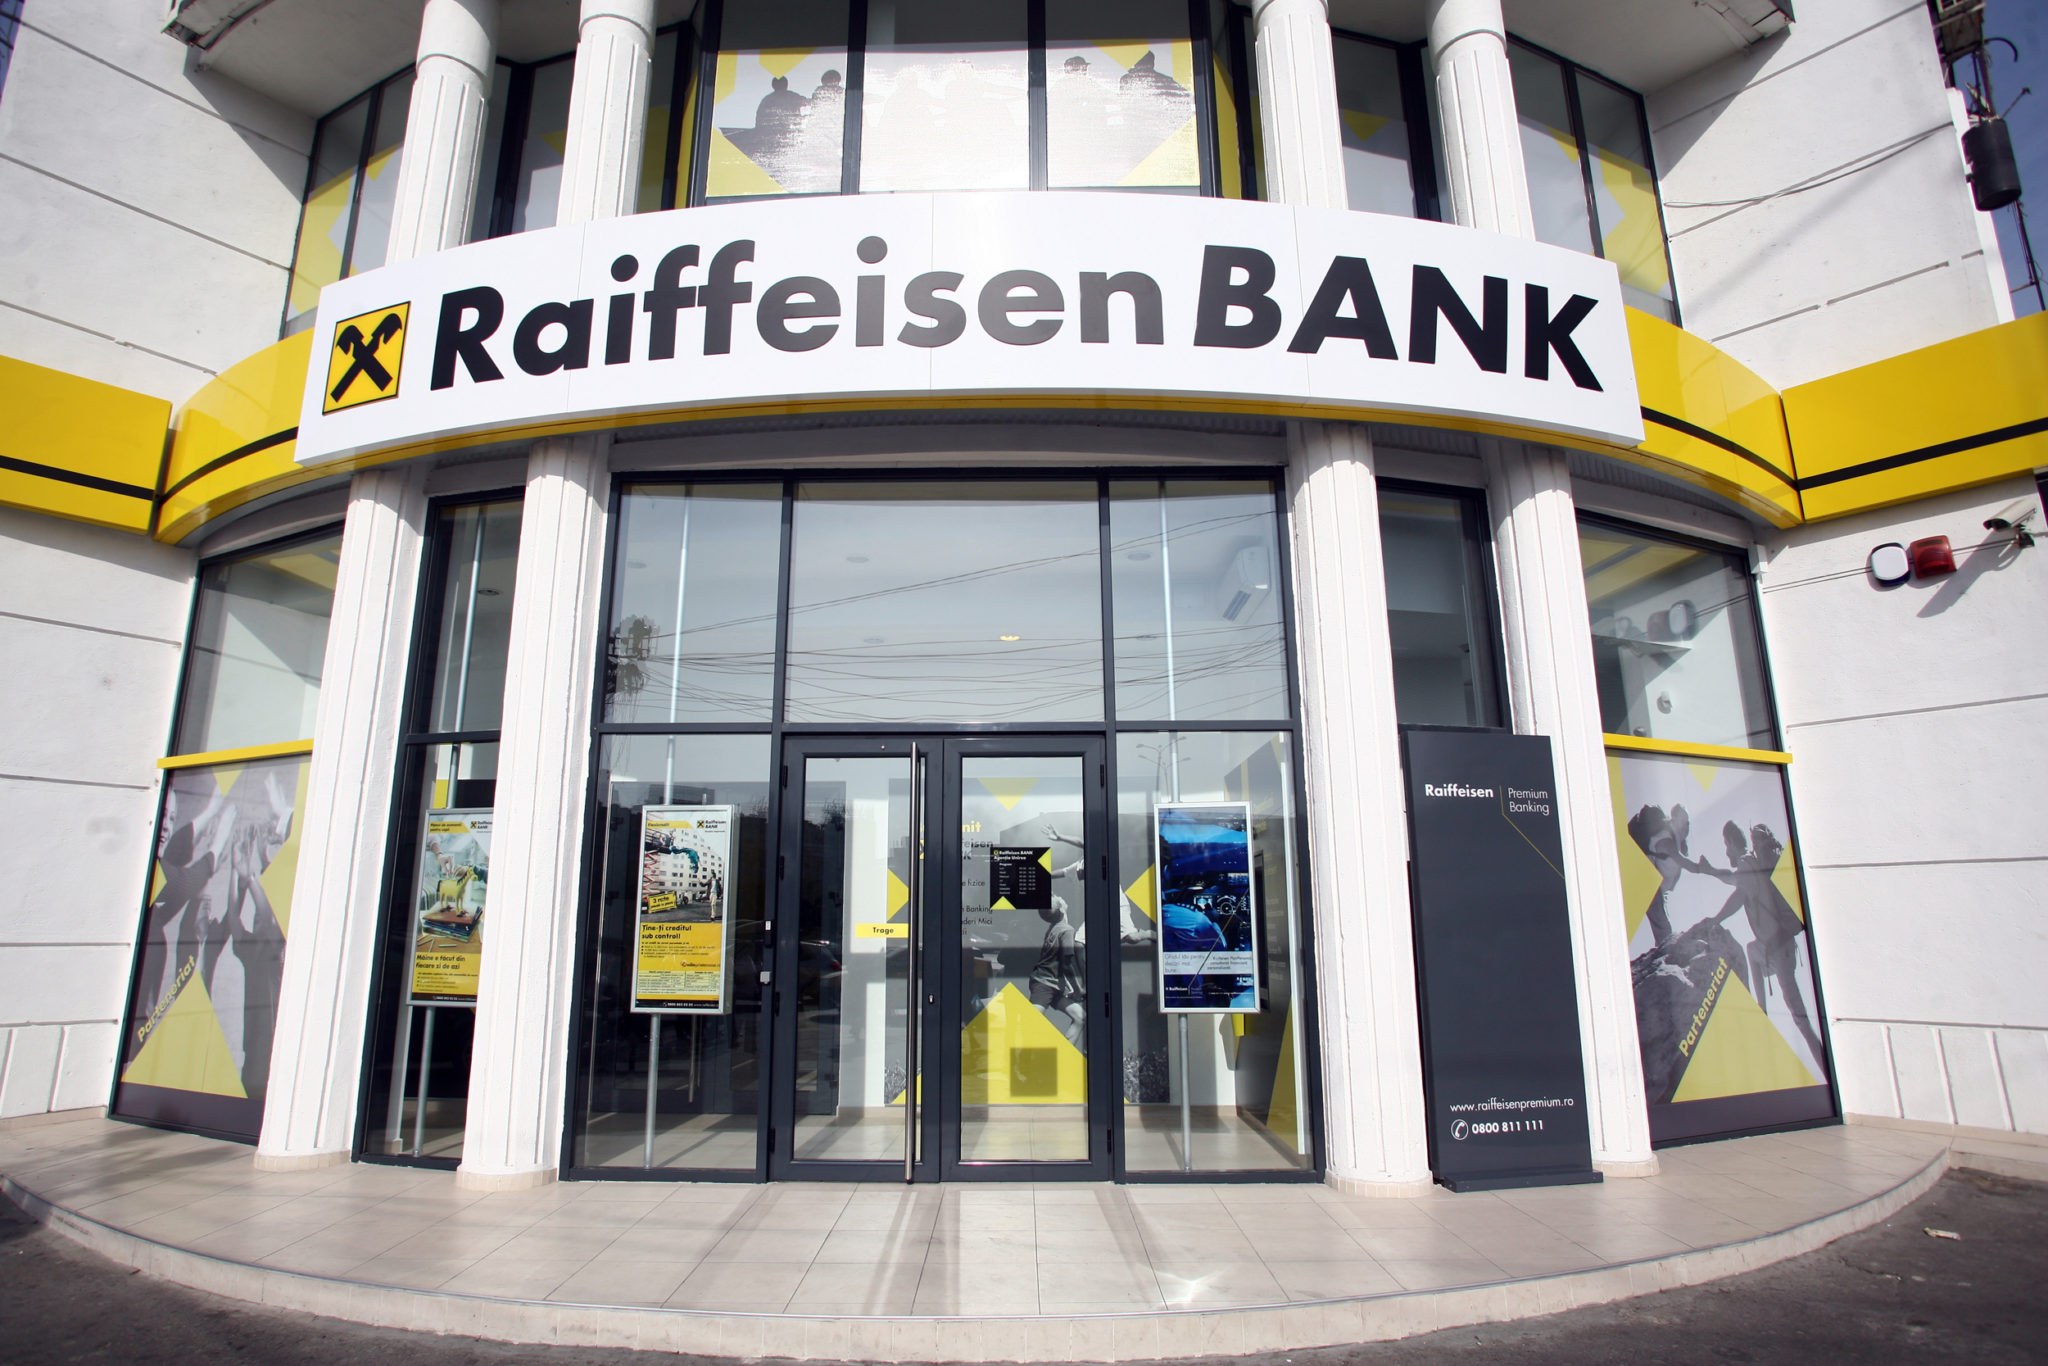 Австрийский Raiffeisen Bank International рассматривает возможность продажи российского подразделения как одну из опций, группа получила необязательные предложения по заинтересованности в этом активе.